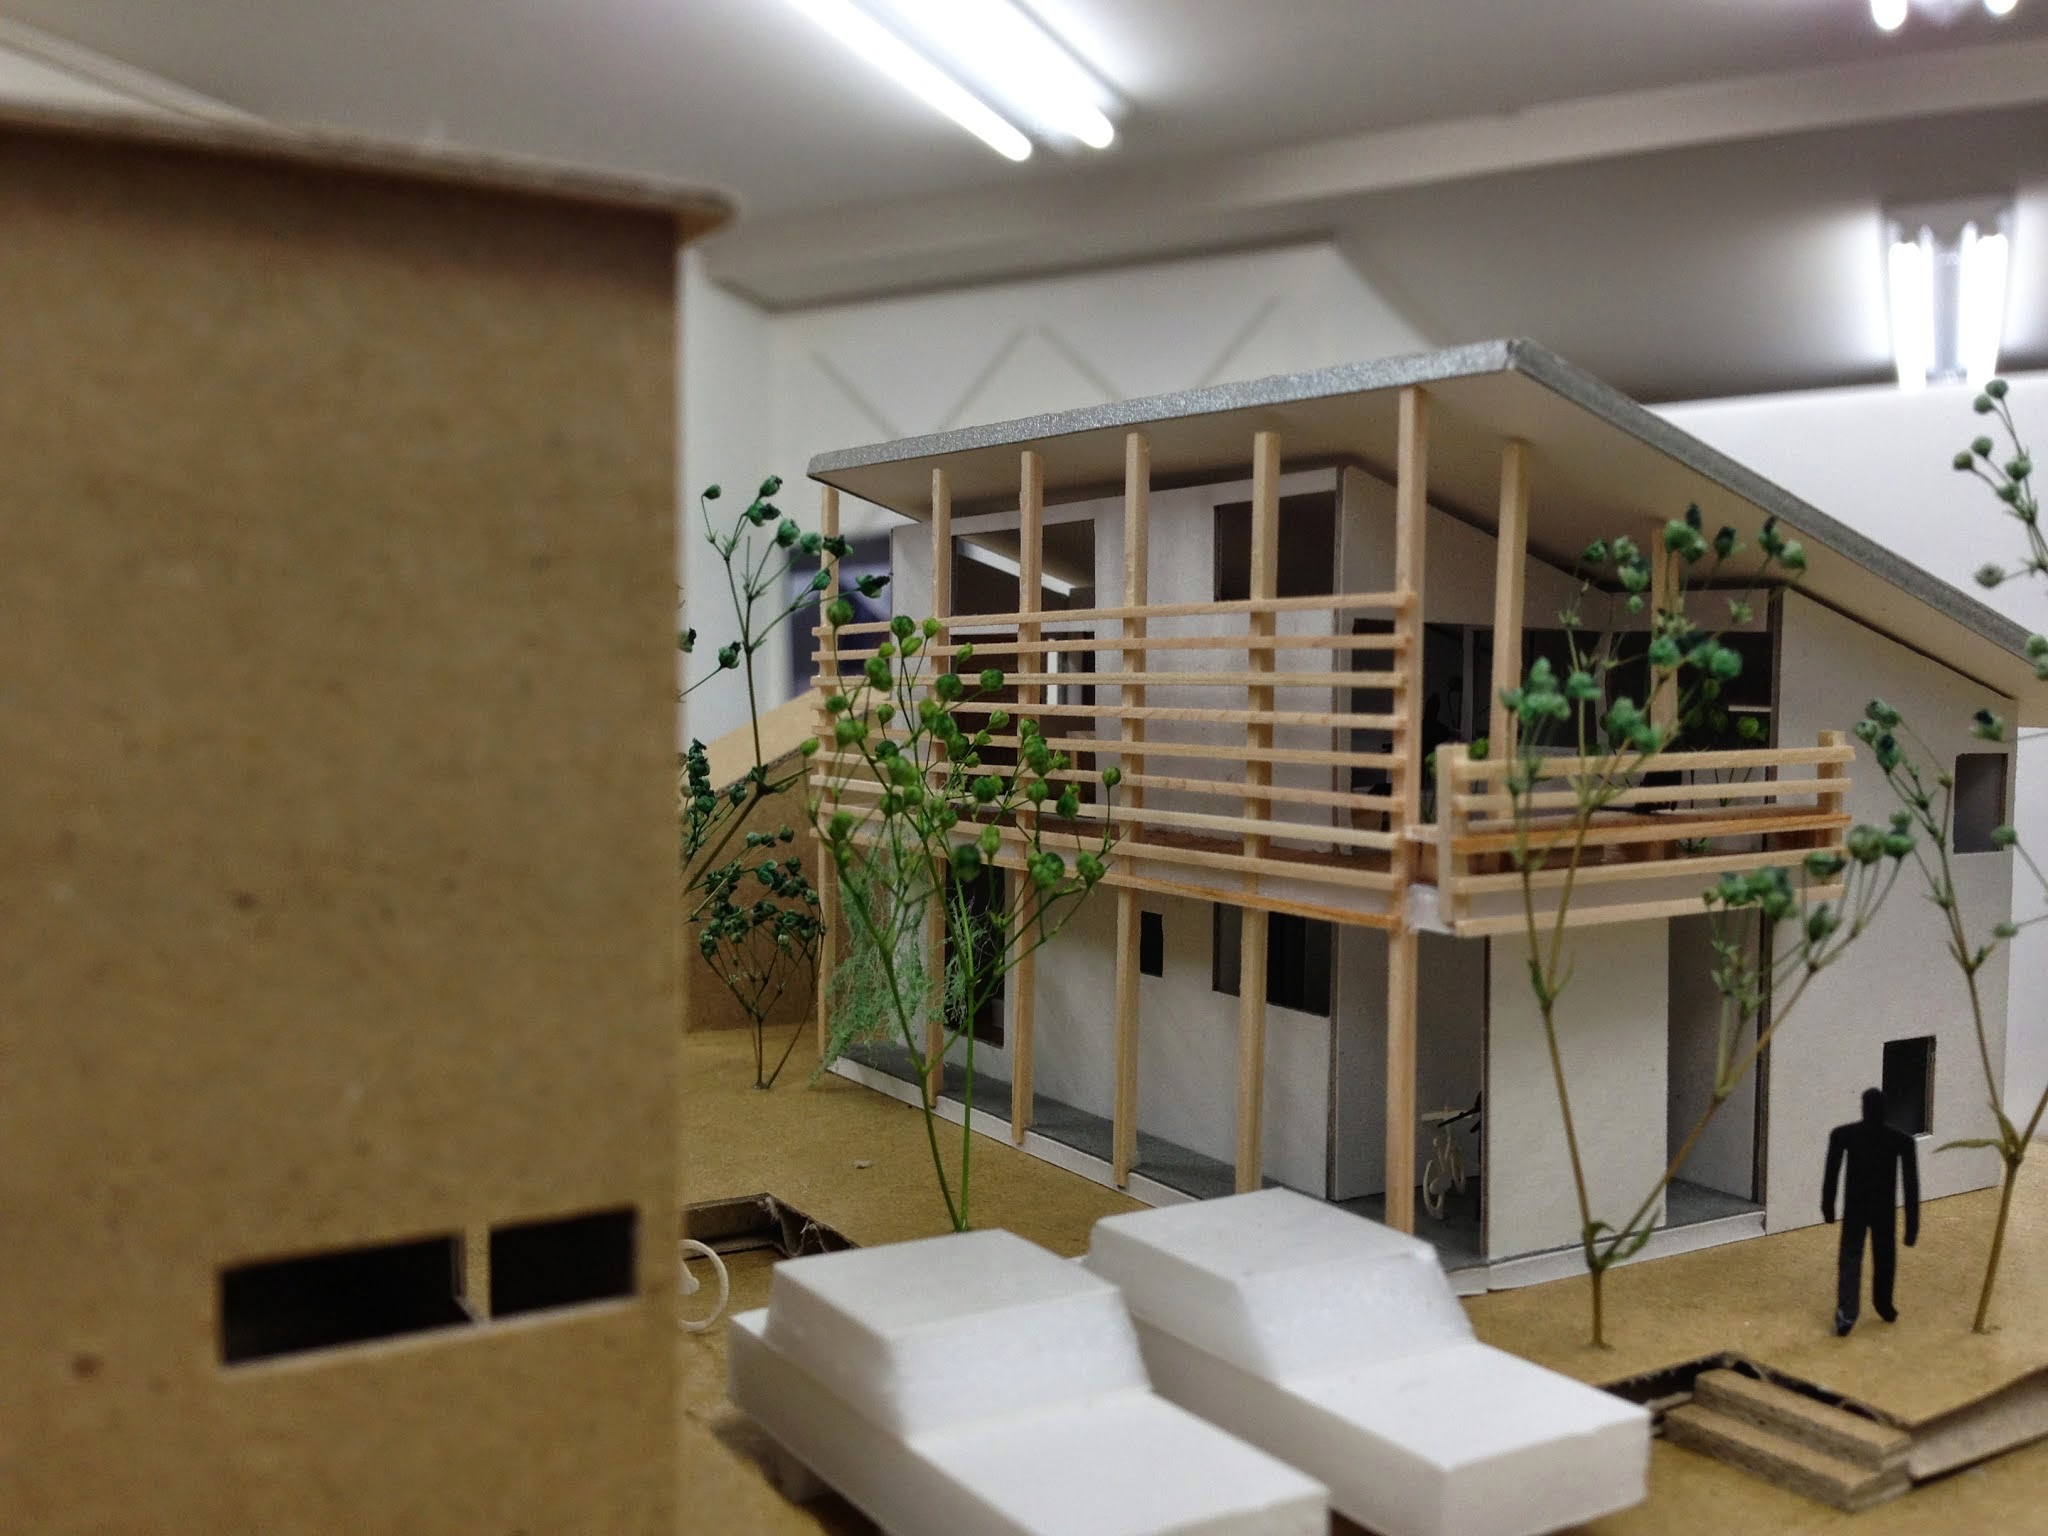 100分の1サイズの模型 Han環境 建築設計事務所